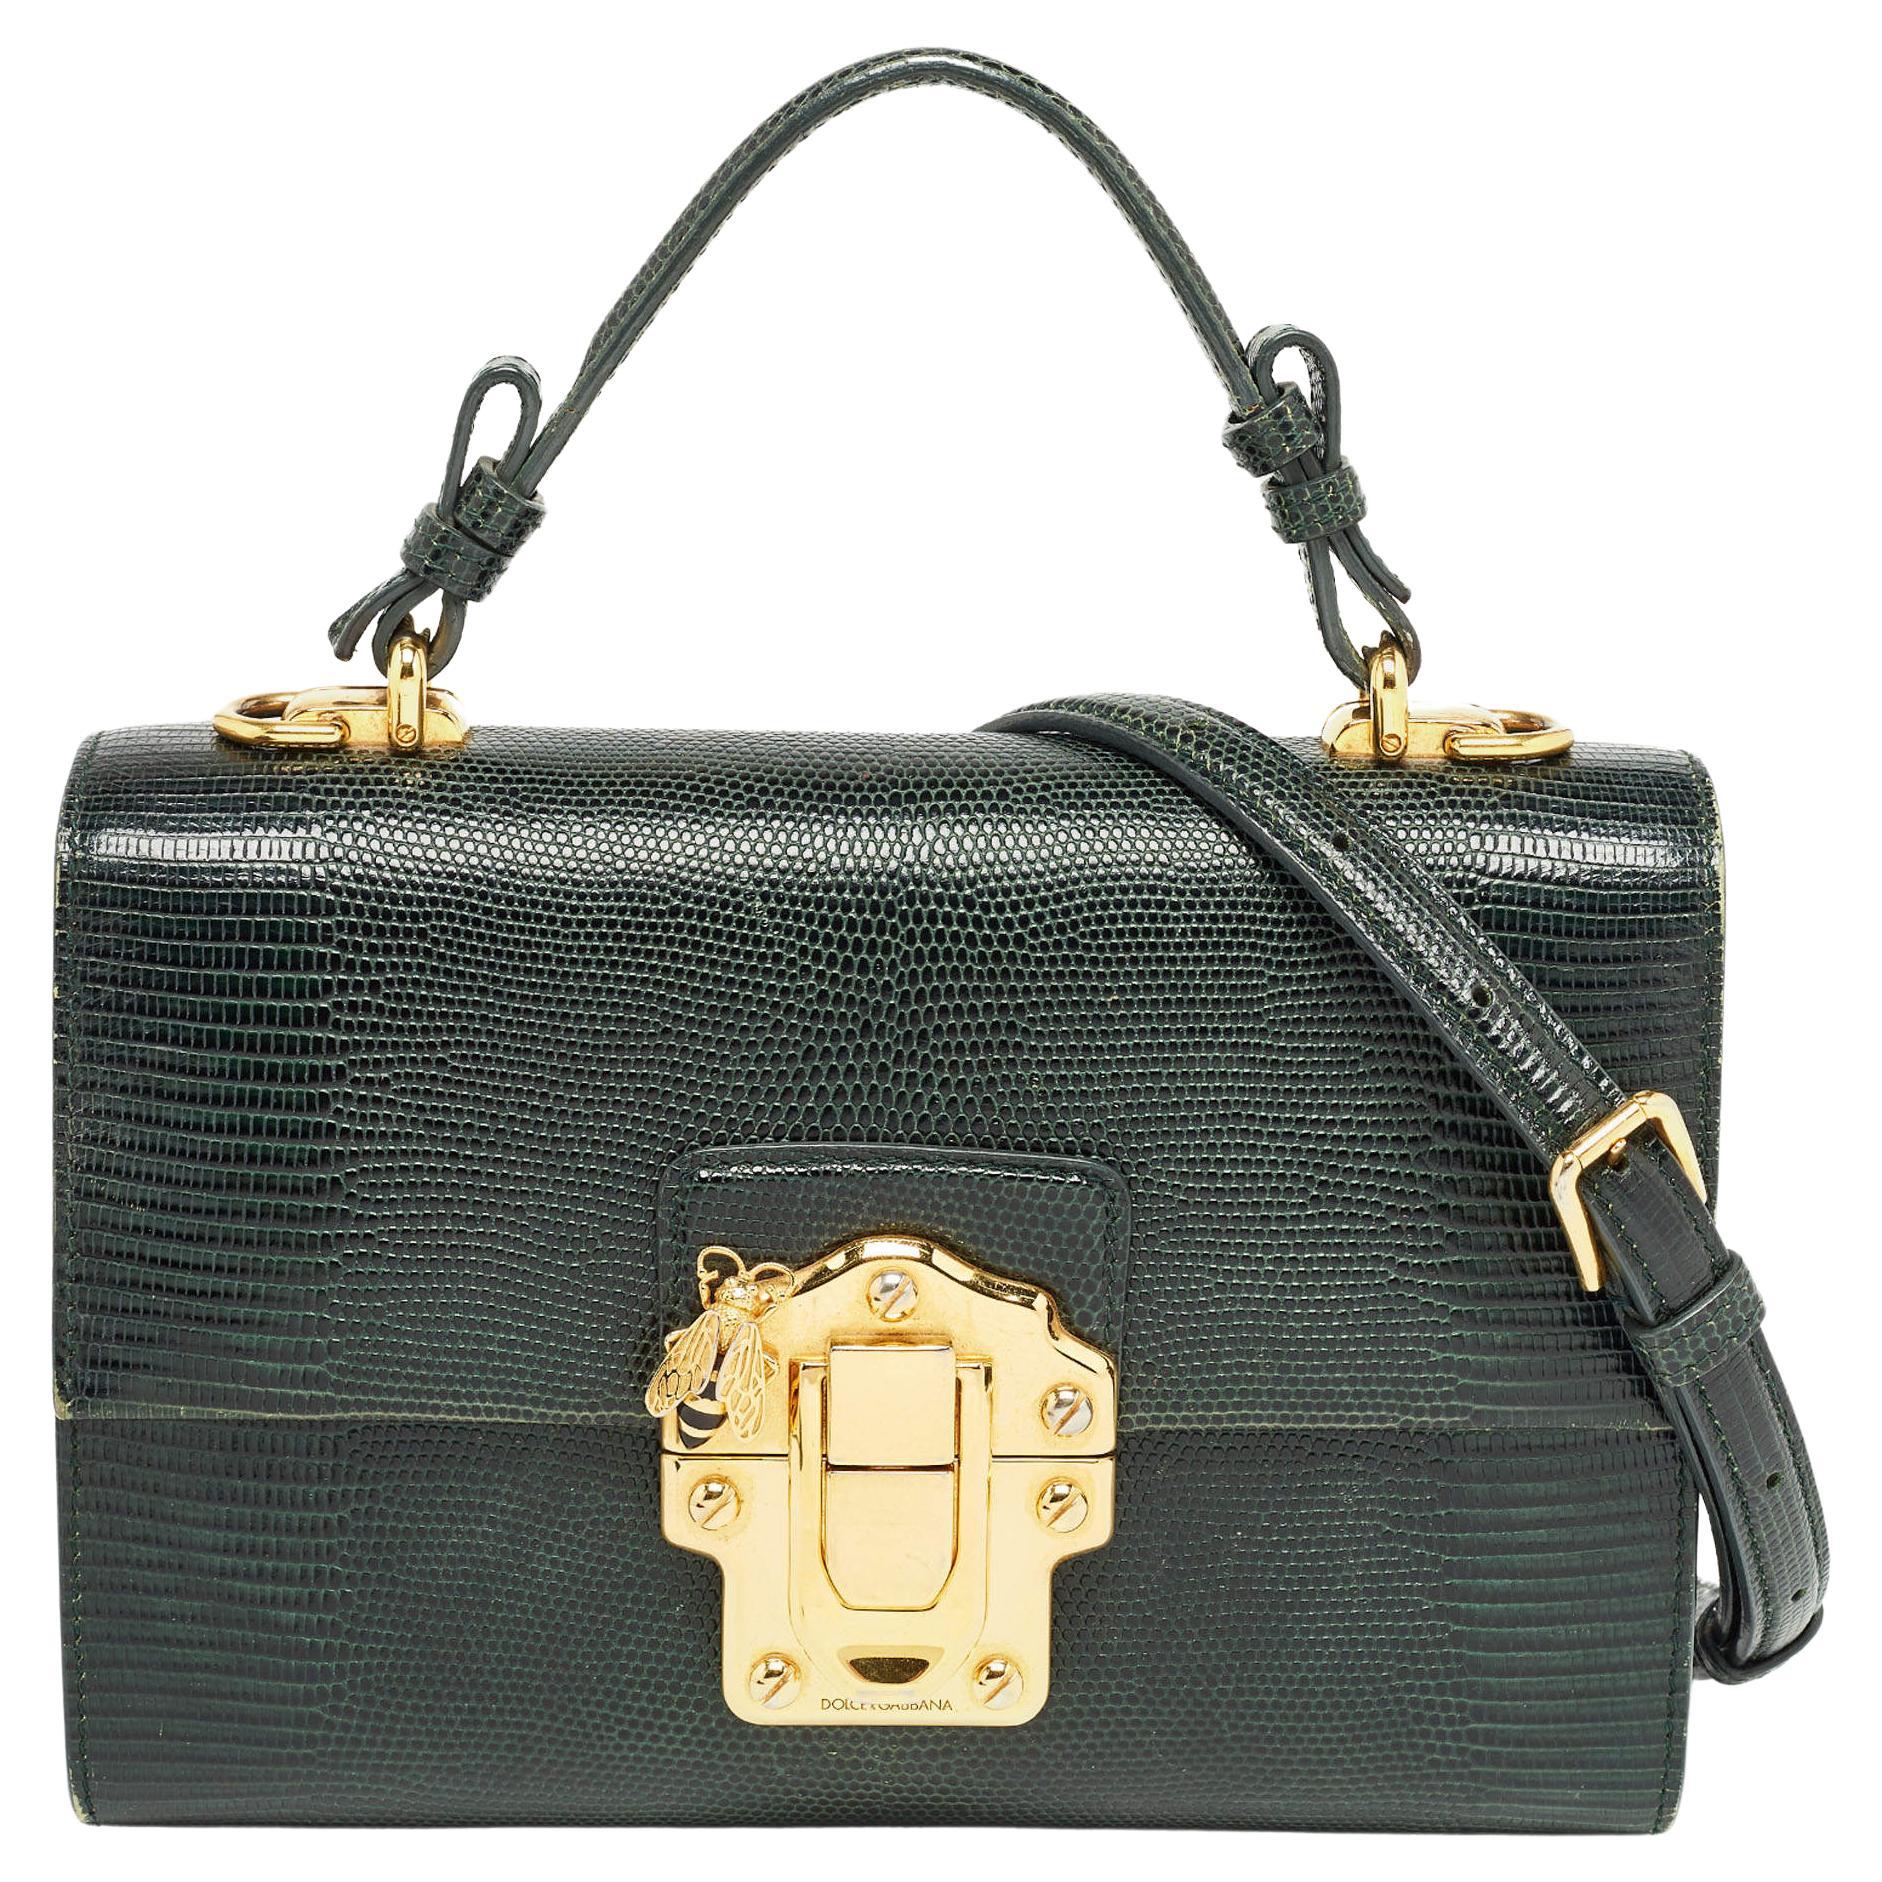 Dolce & Gabbana Dunkelgr�üne Lucia Top Handle Bag aus geprägtem Leder mit Eidechsenprägung